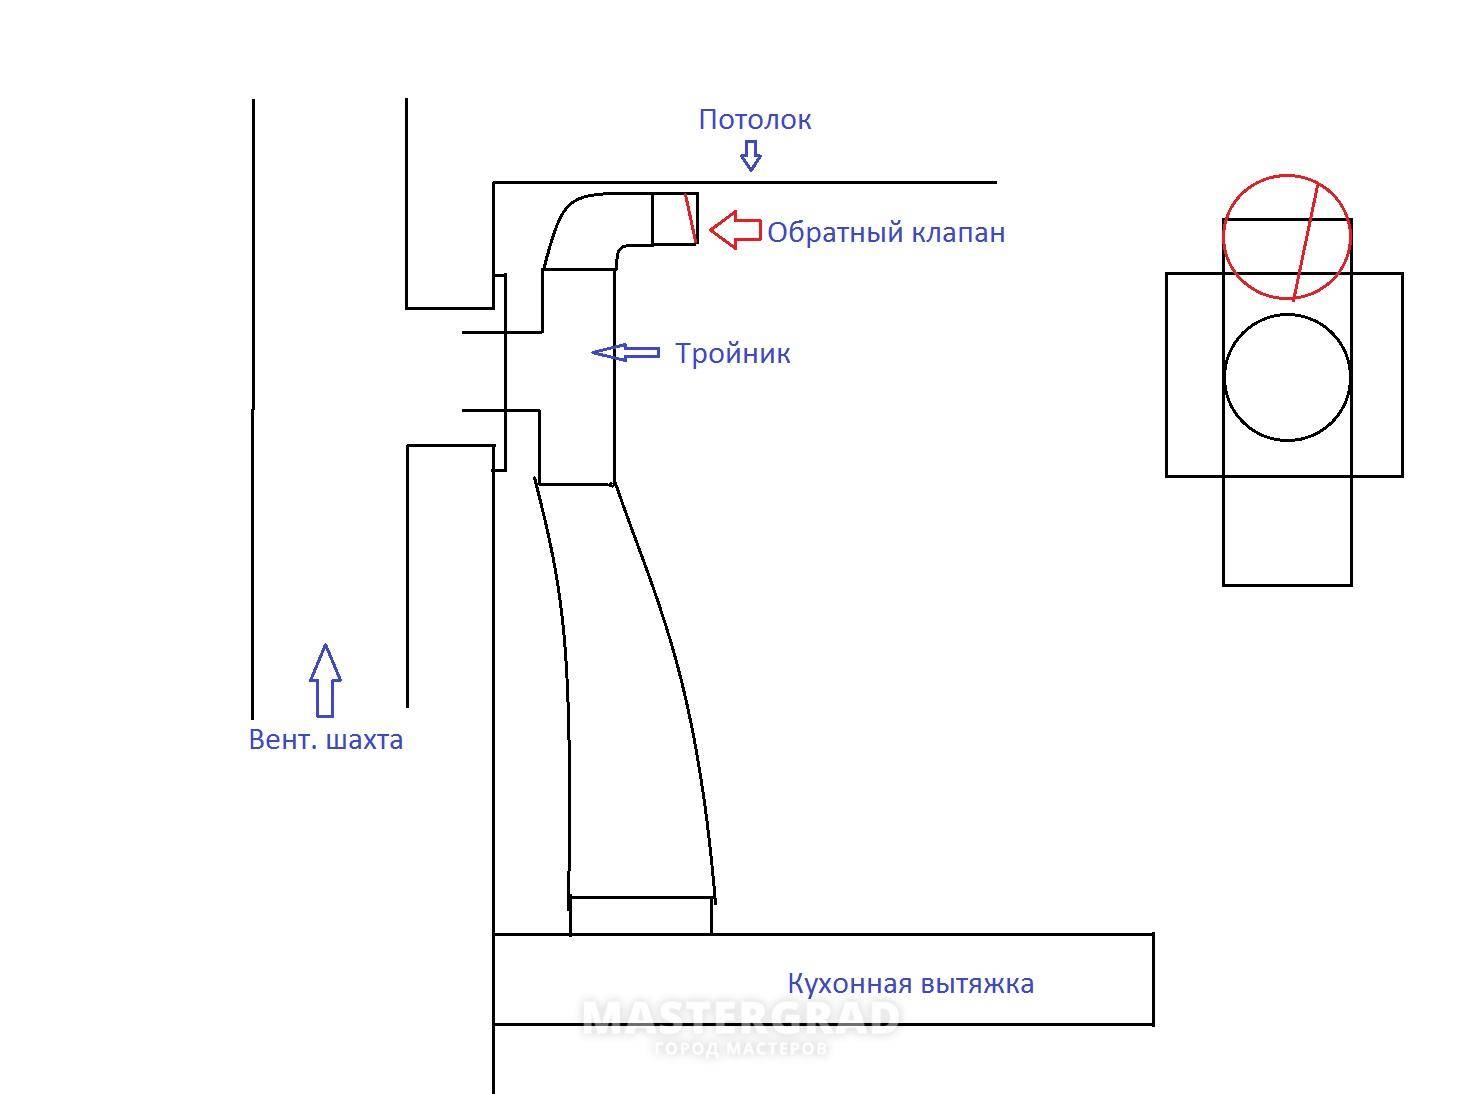 Обратный клапан на вентиляцию: применение и критерии выбора устройств – советы по ремонту